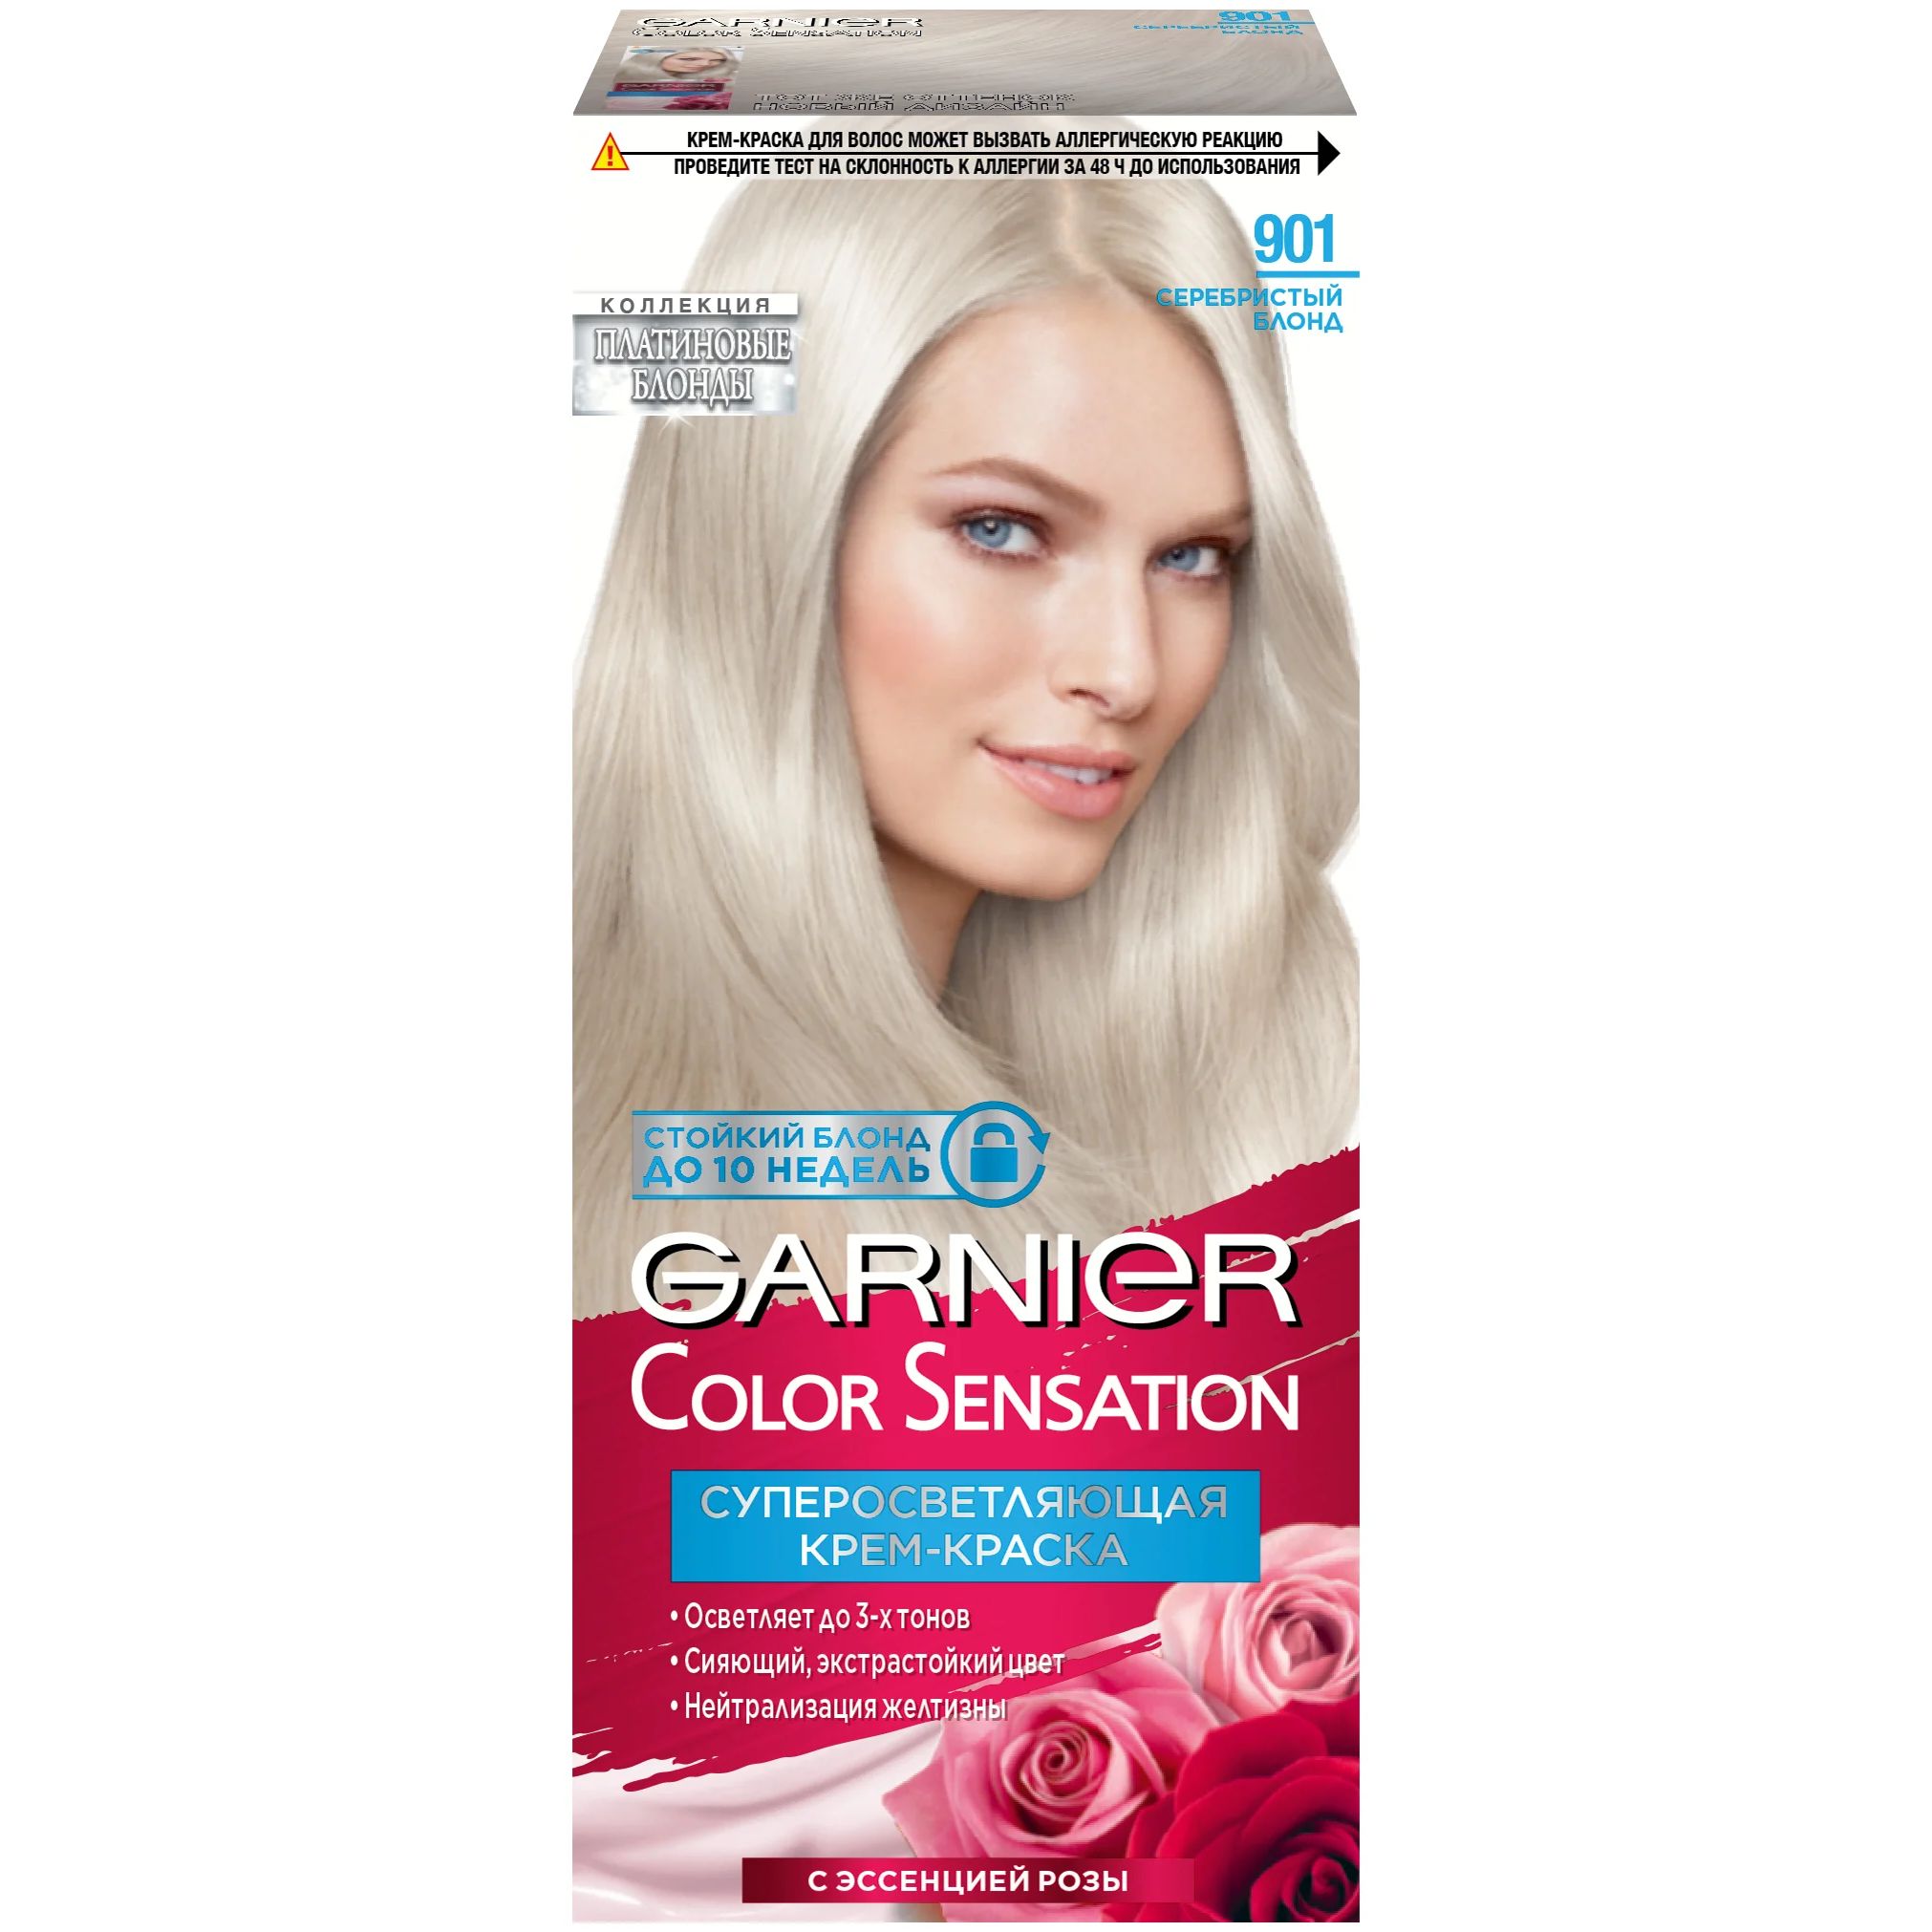 Крем-краска для волос Garnier Color Sensation 901 Серебристый Блонд uniclean набор шампунь для французских бульдогов и крем мыло с маточным молочком